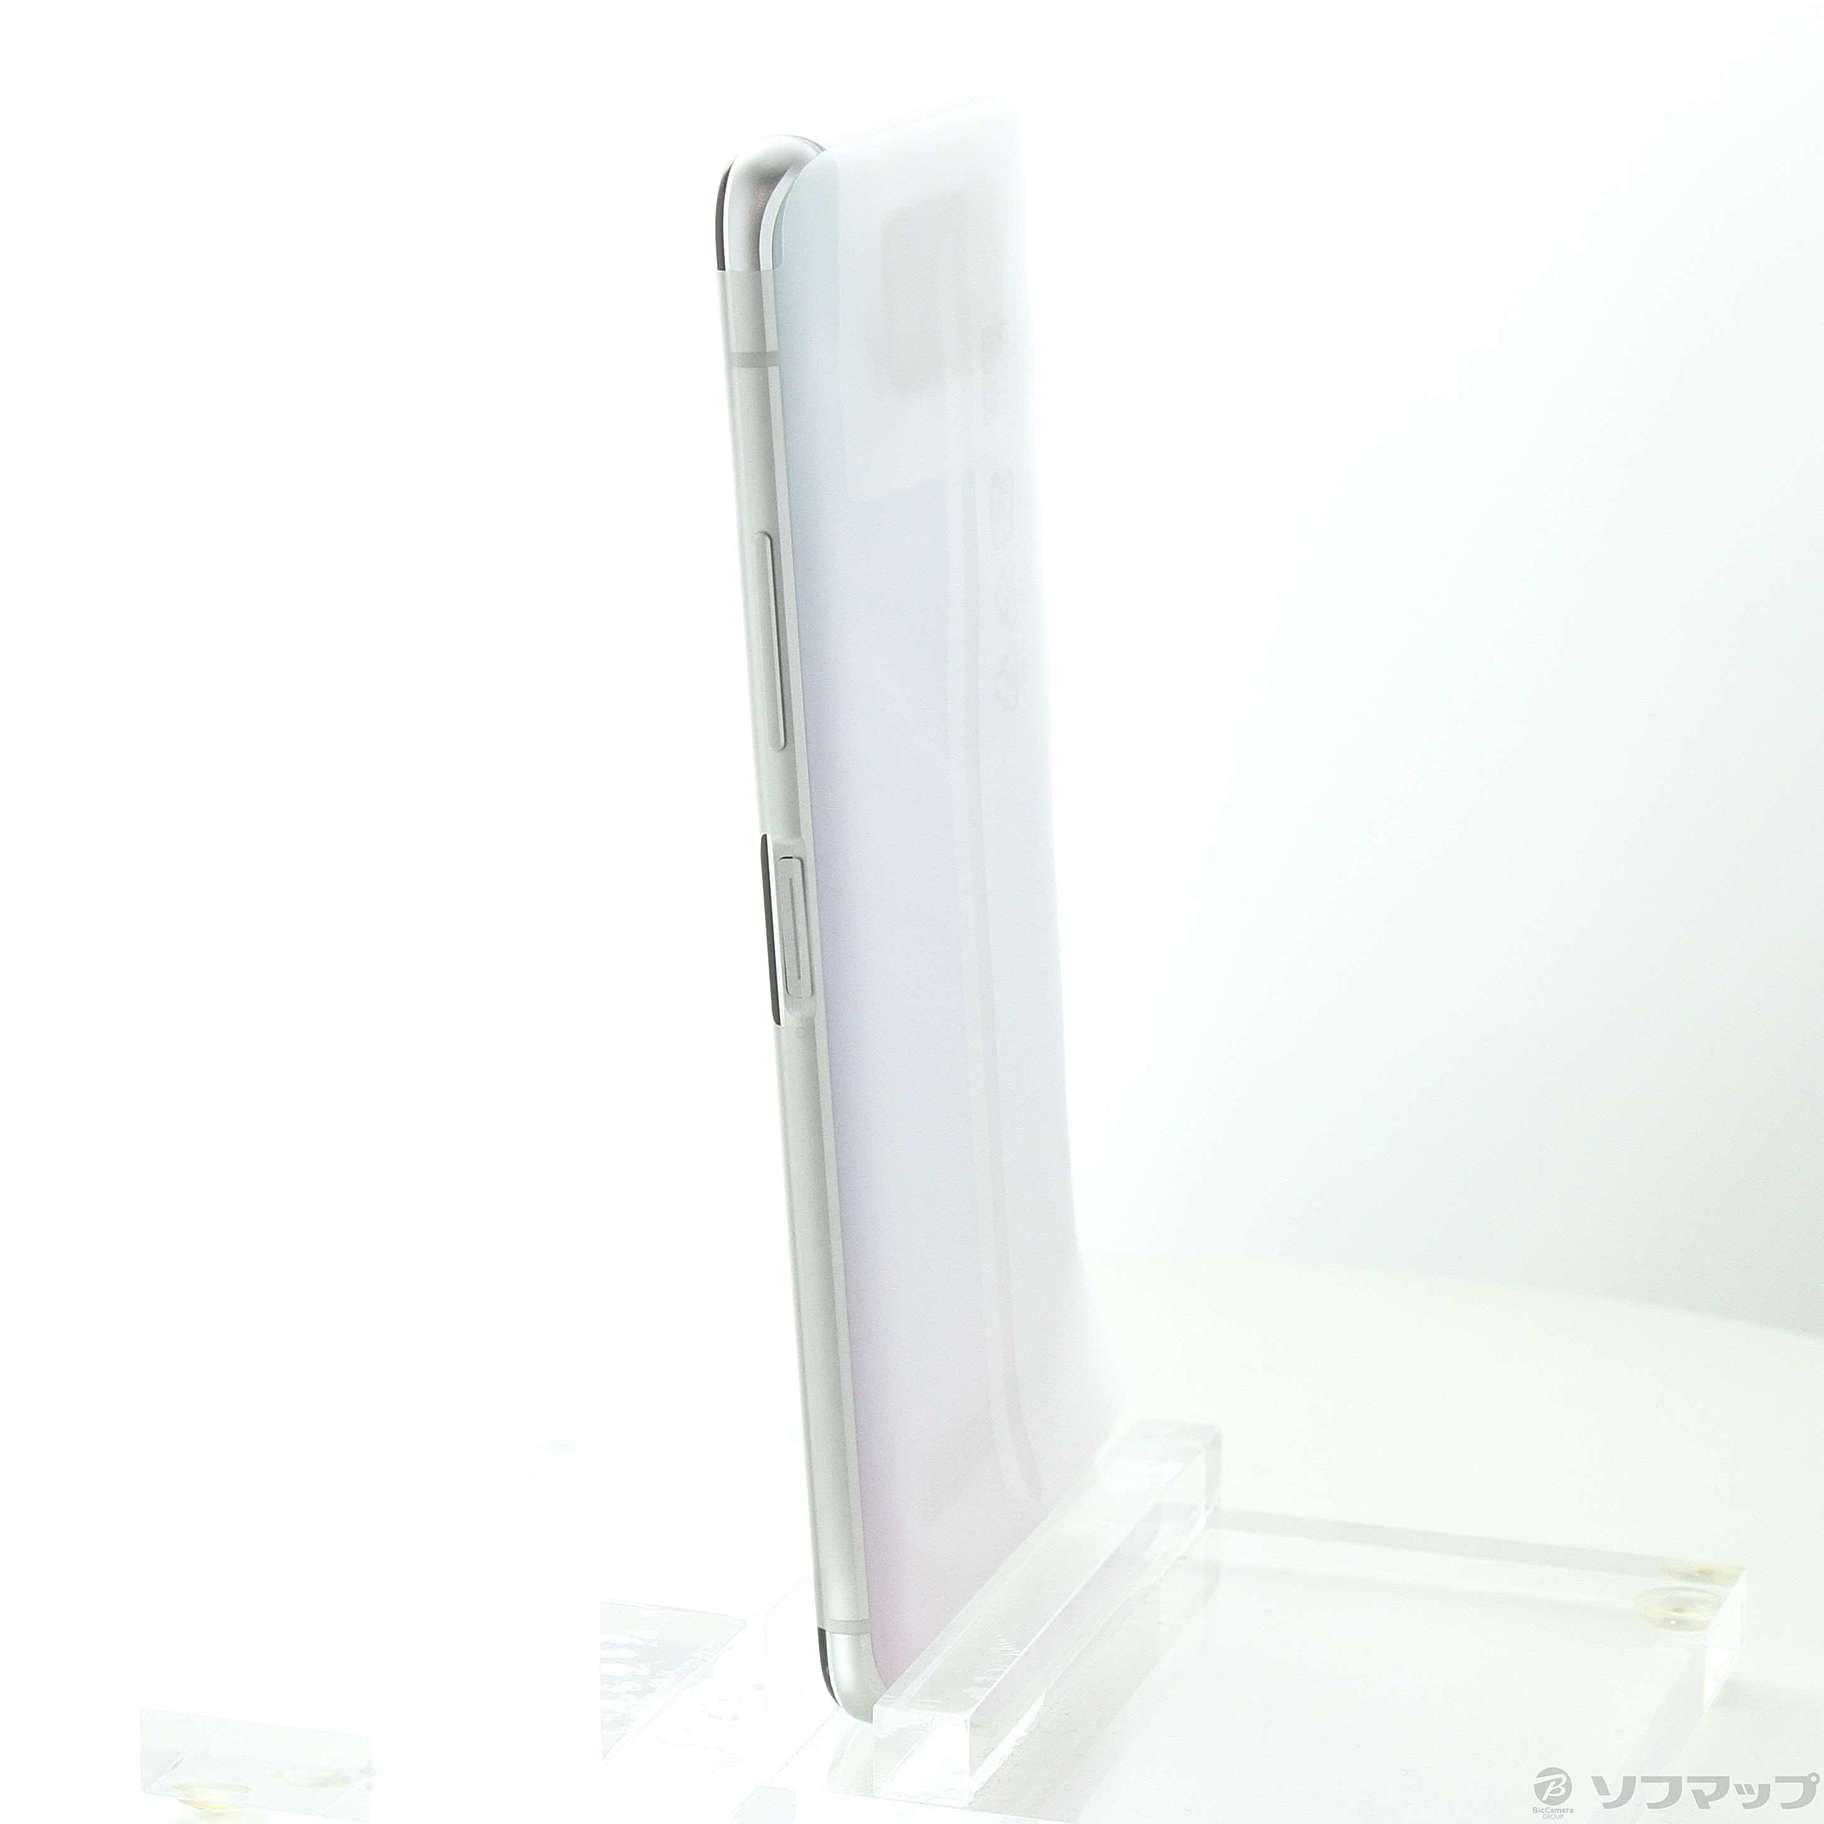 中古】ZenFone 7 128GB パステルホワイト ZS670KS-WH128S8 SIMフリー 